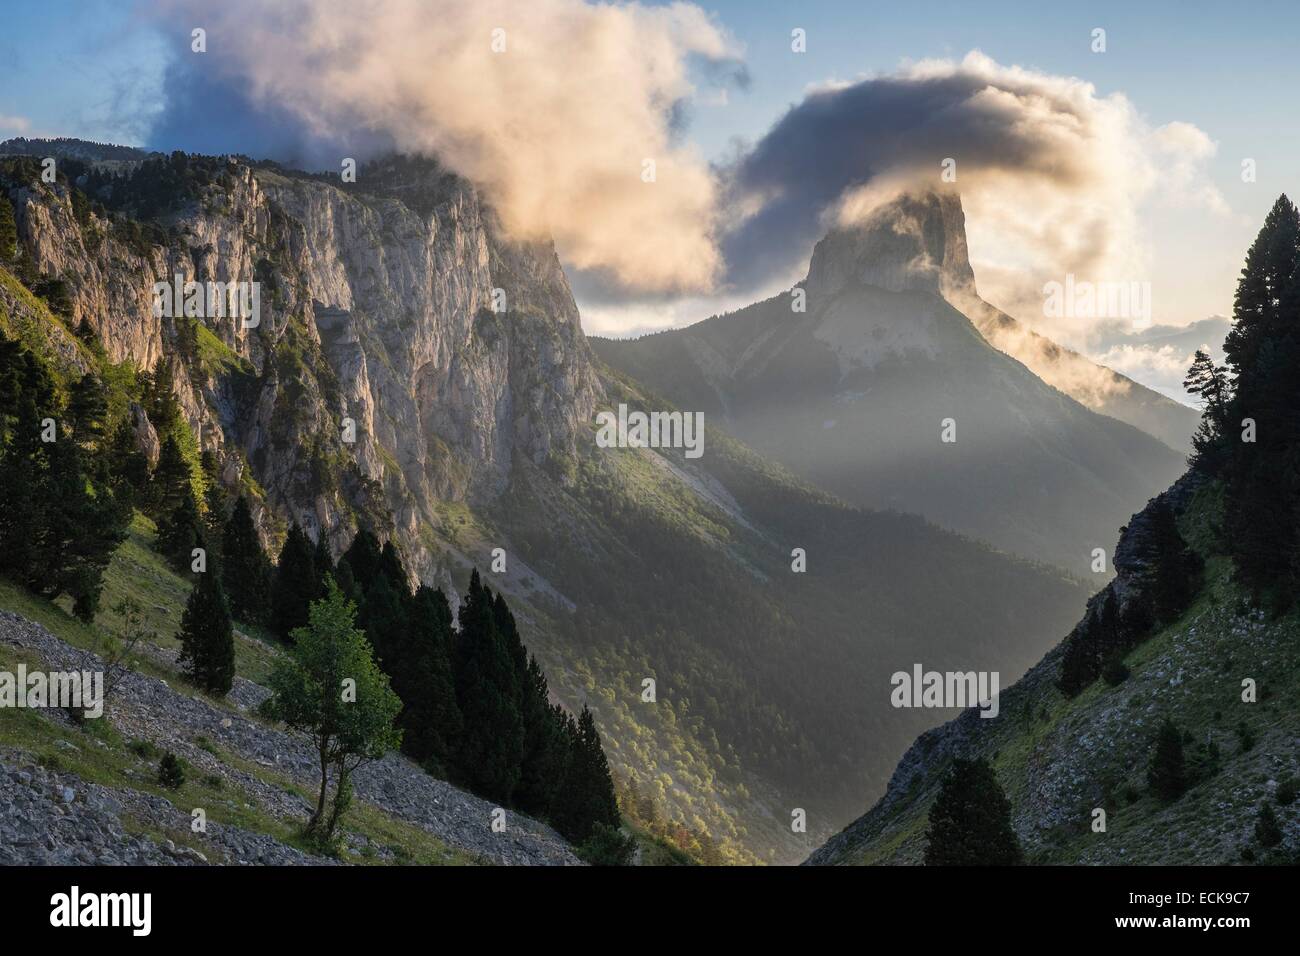 France, Isère, parc naturel régional du Vercors, le Mont Aiguille (alt : 2086 m) de la montagnes du Vercors Banque D'Images